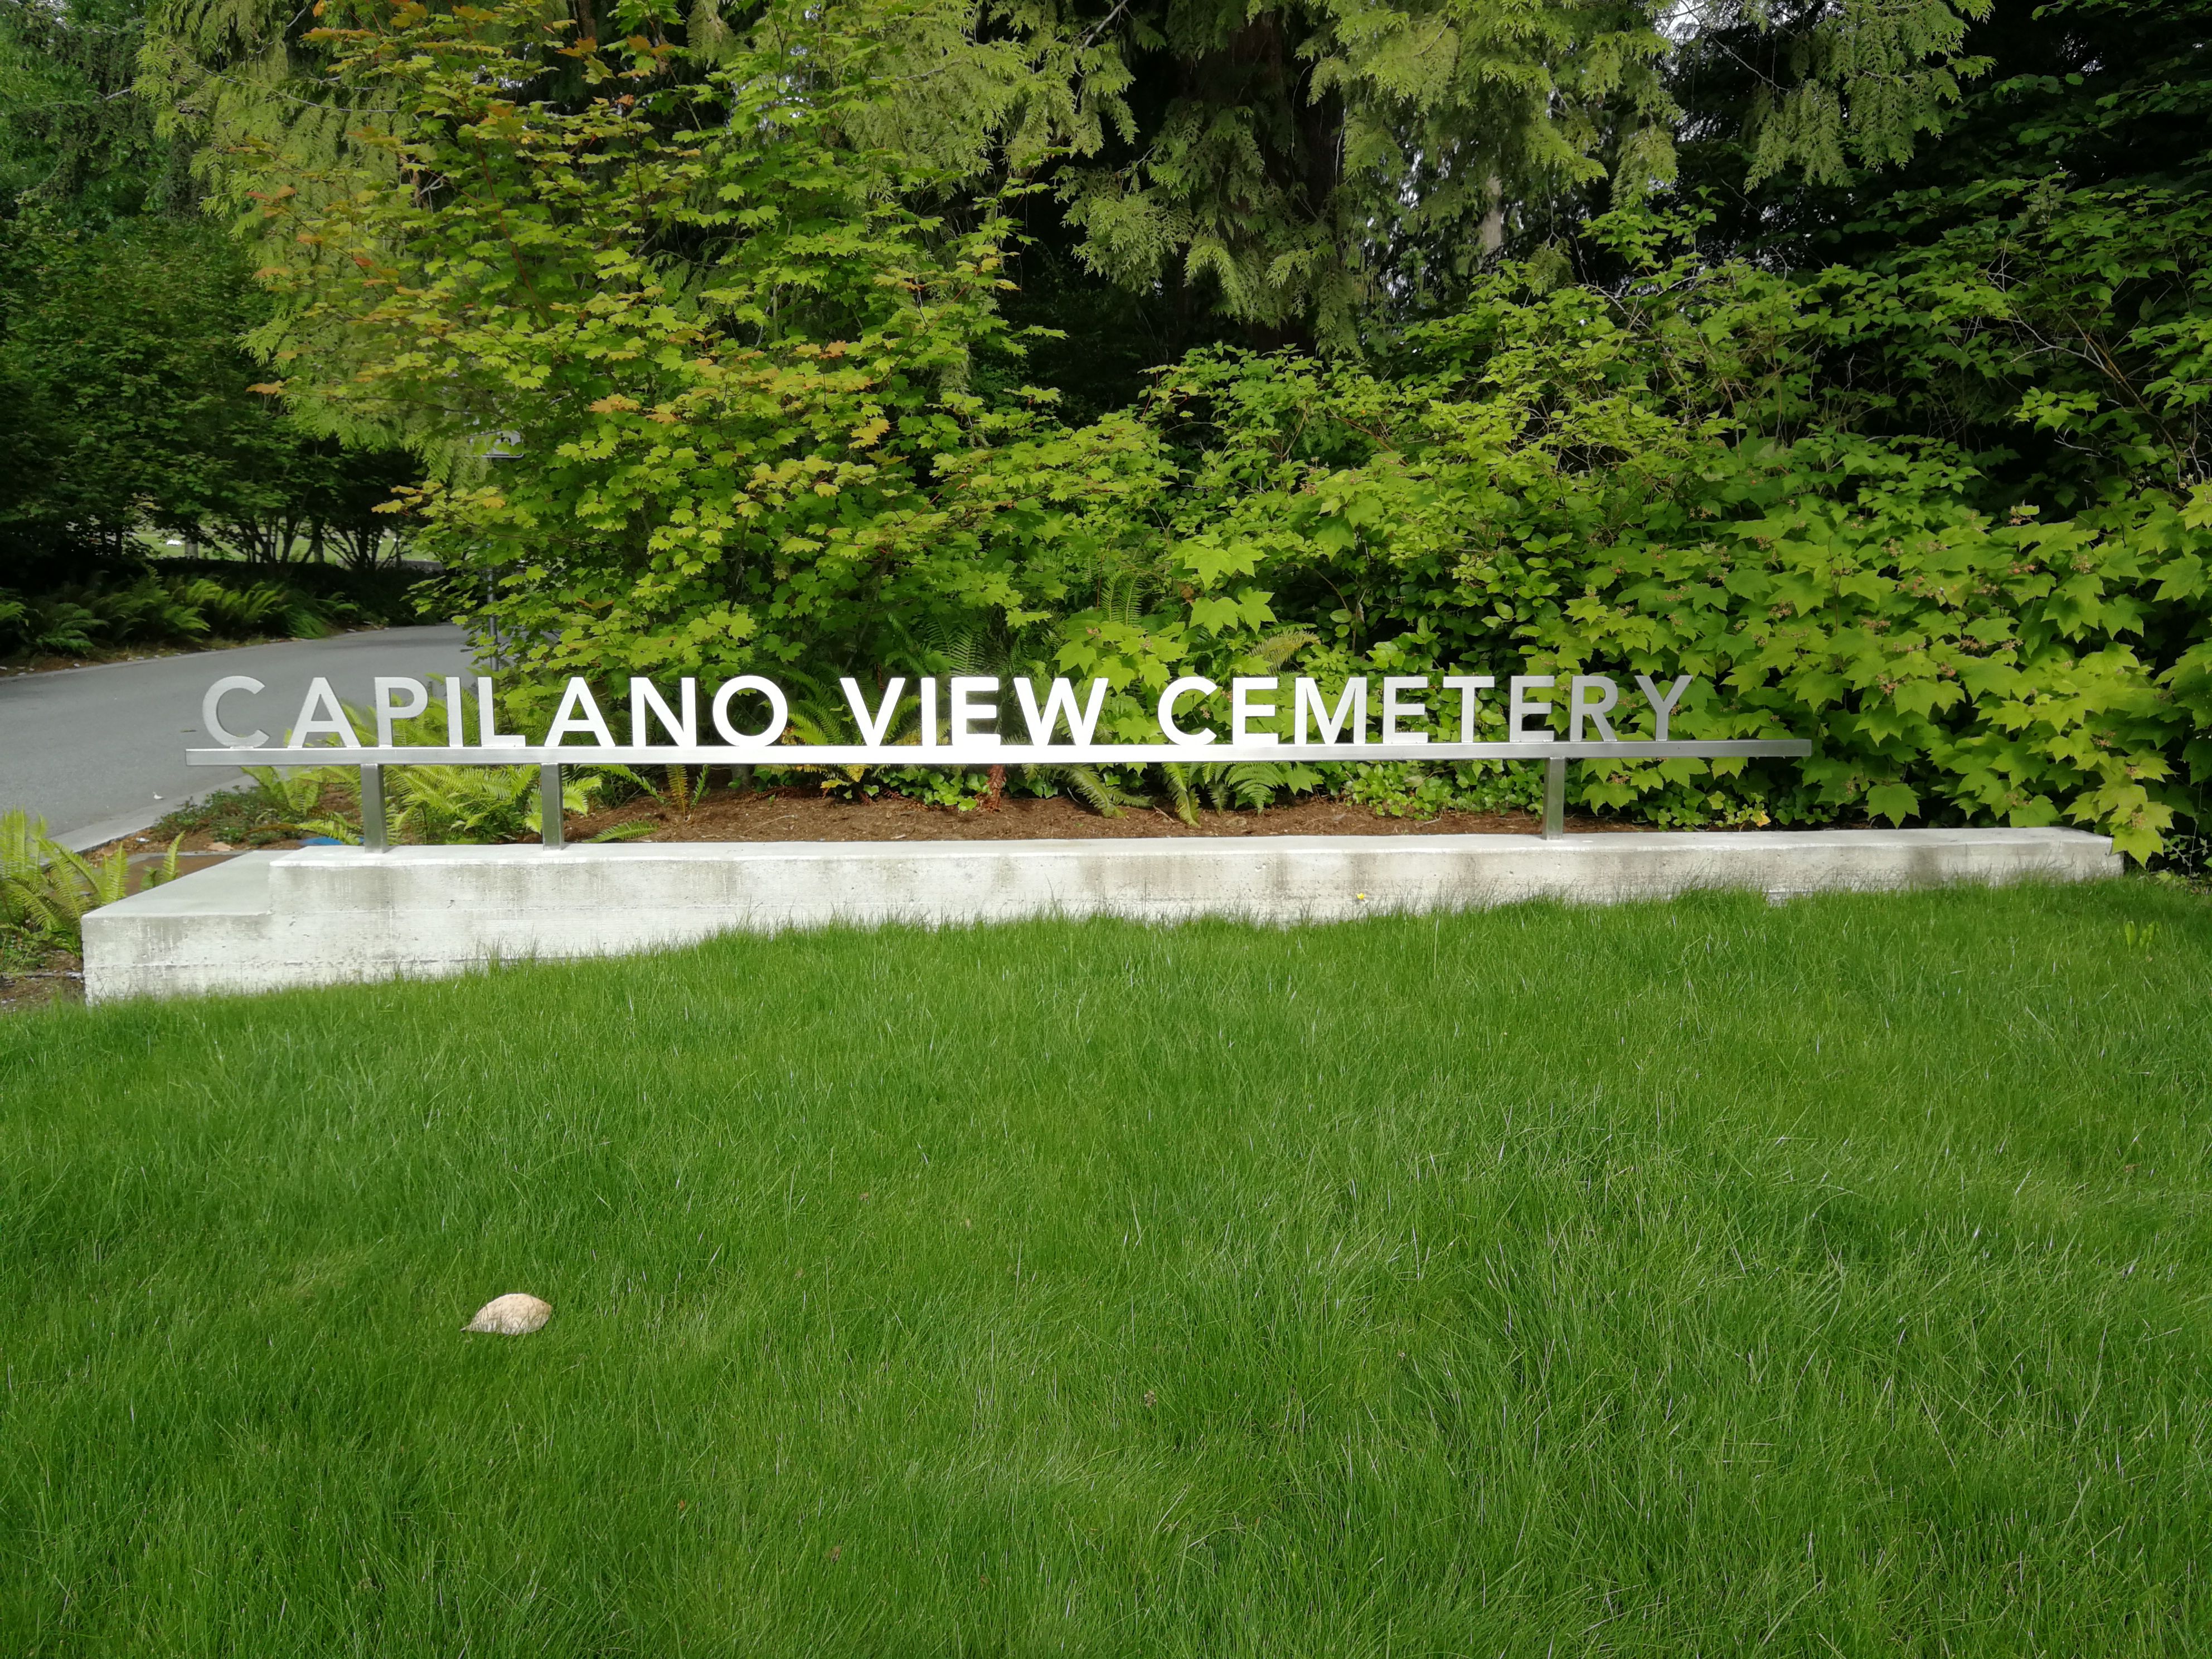 Capilano View Cemetery